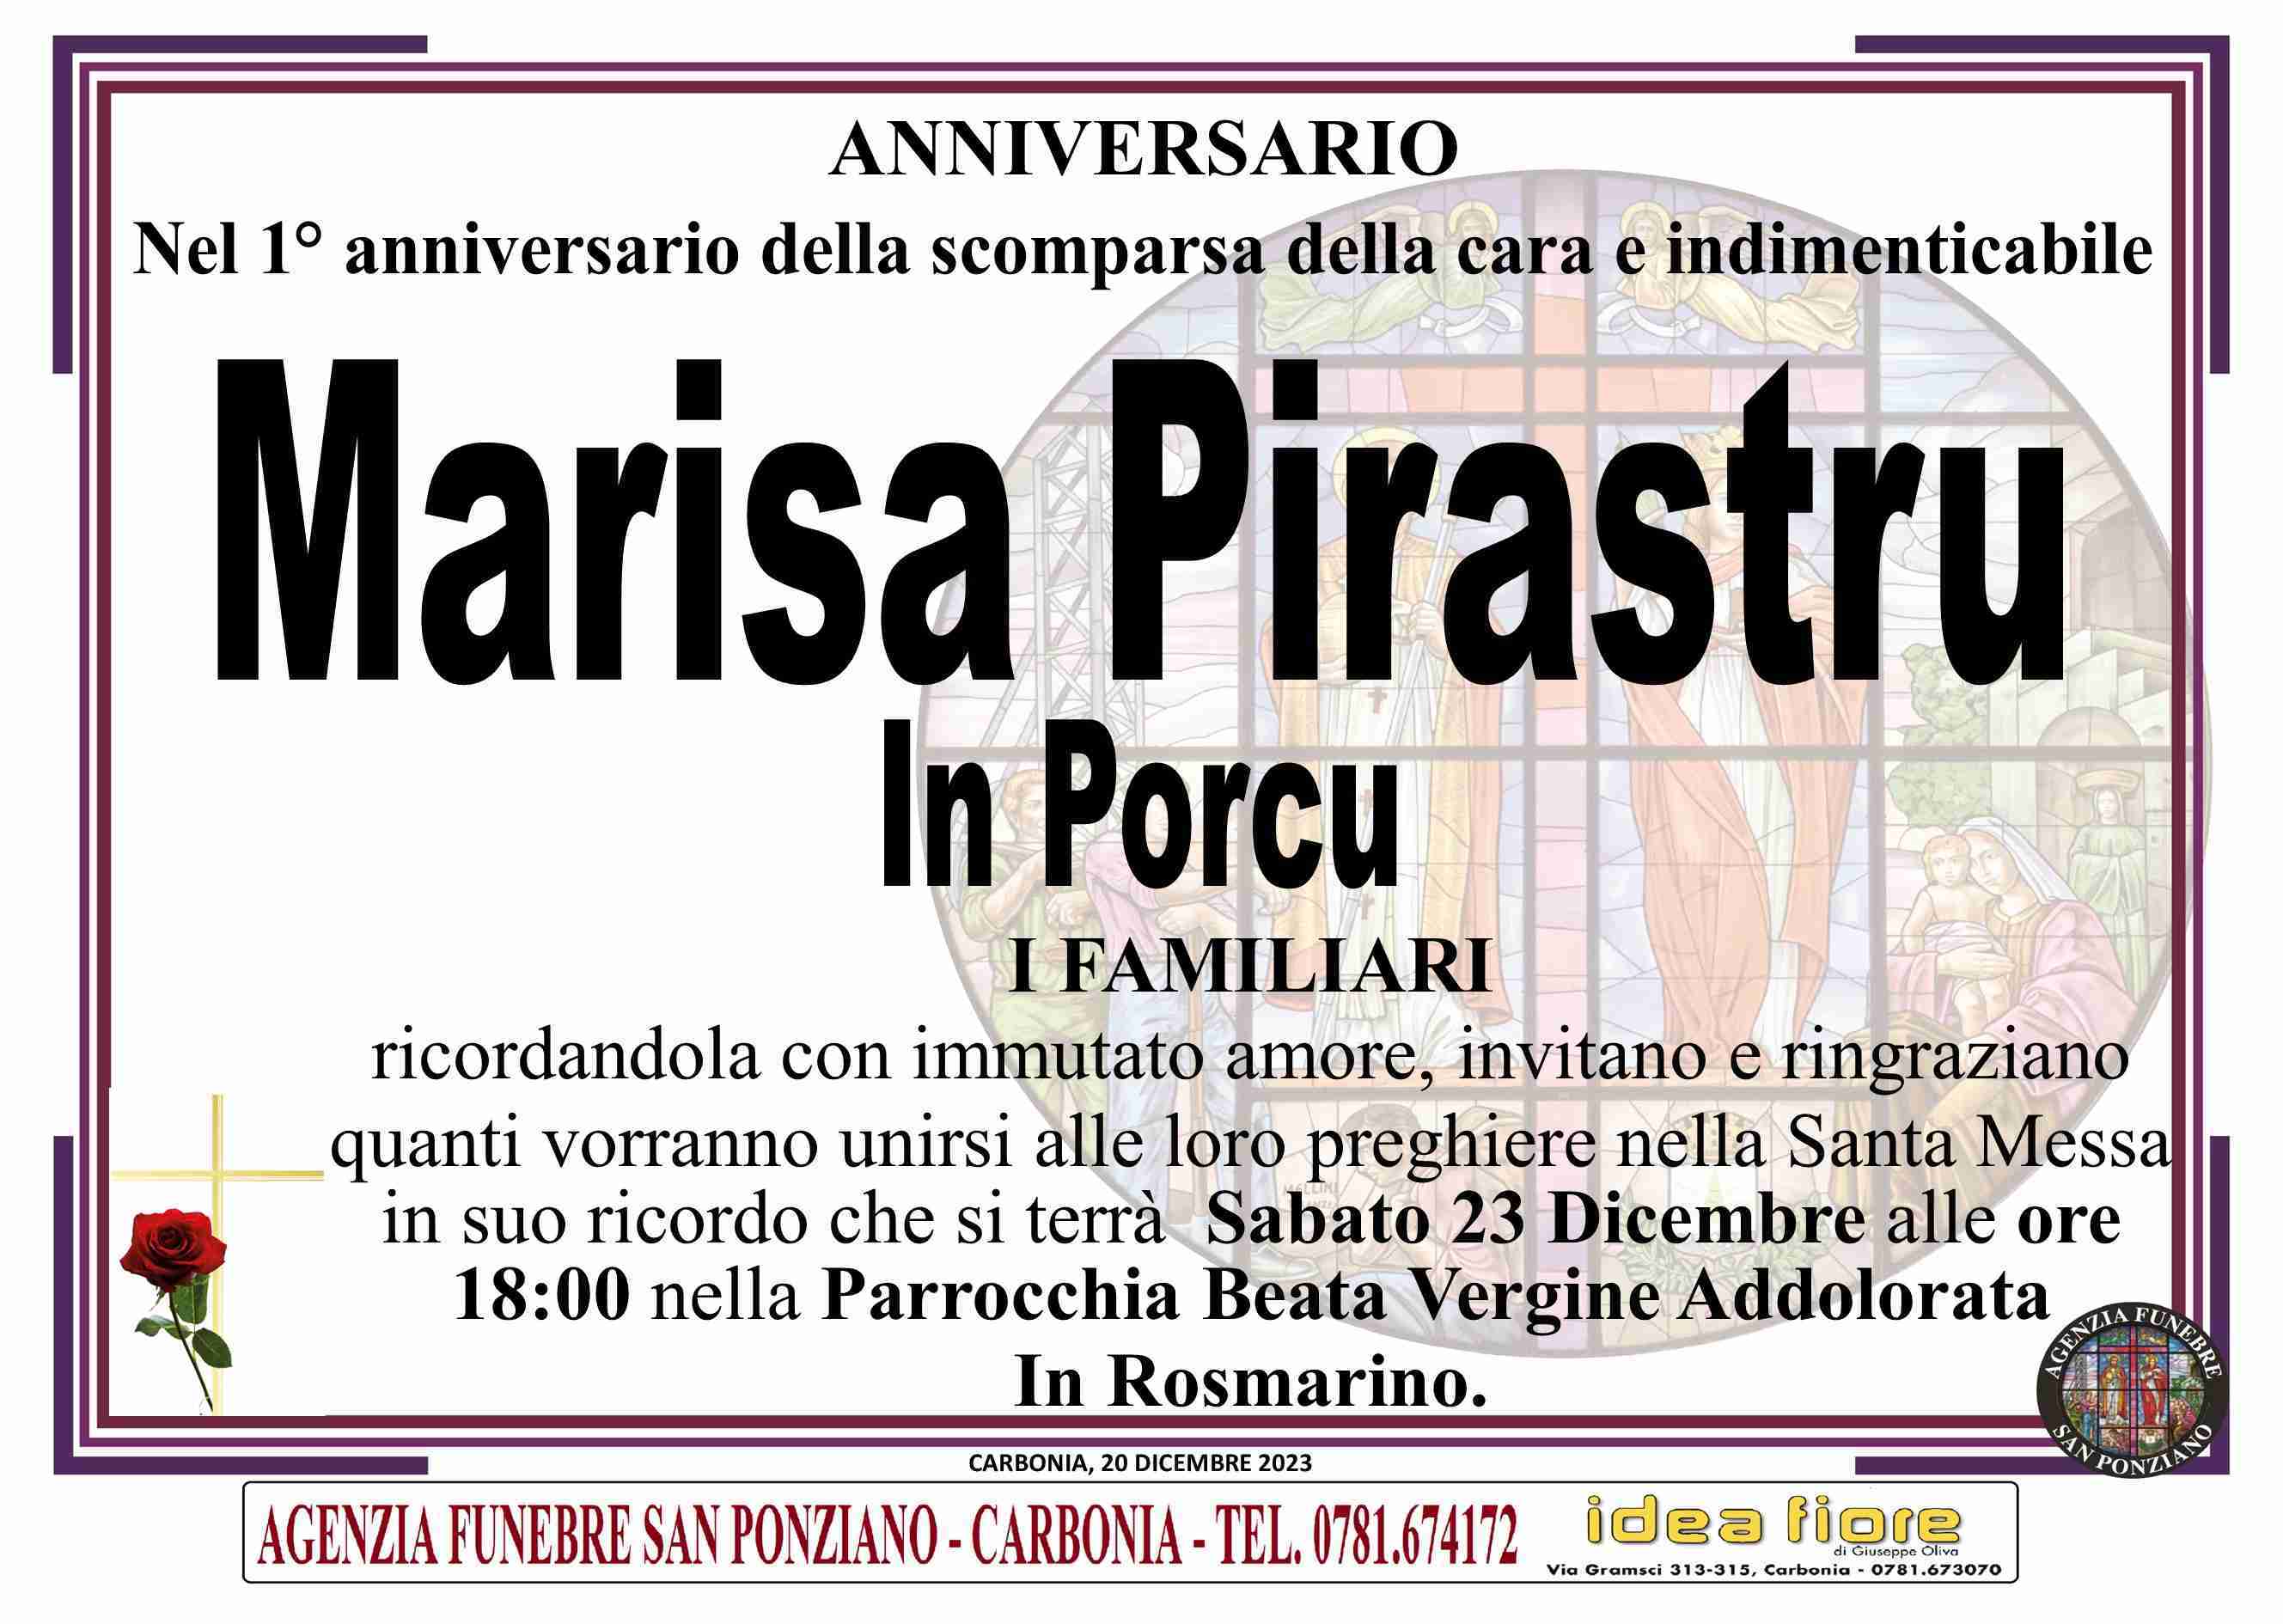 Marisa Pirastru